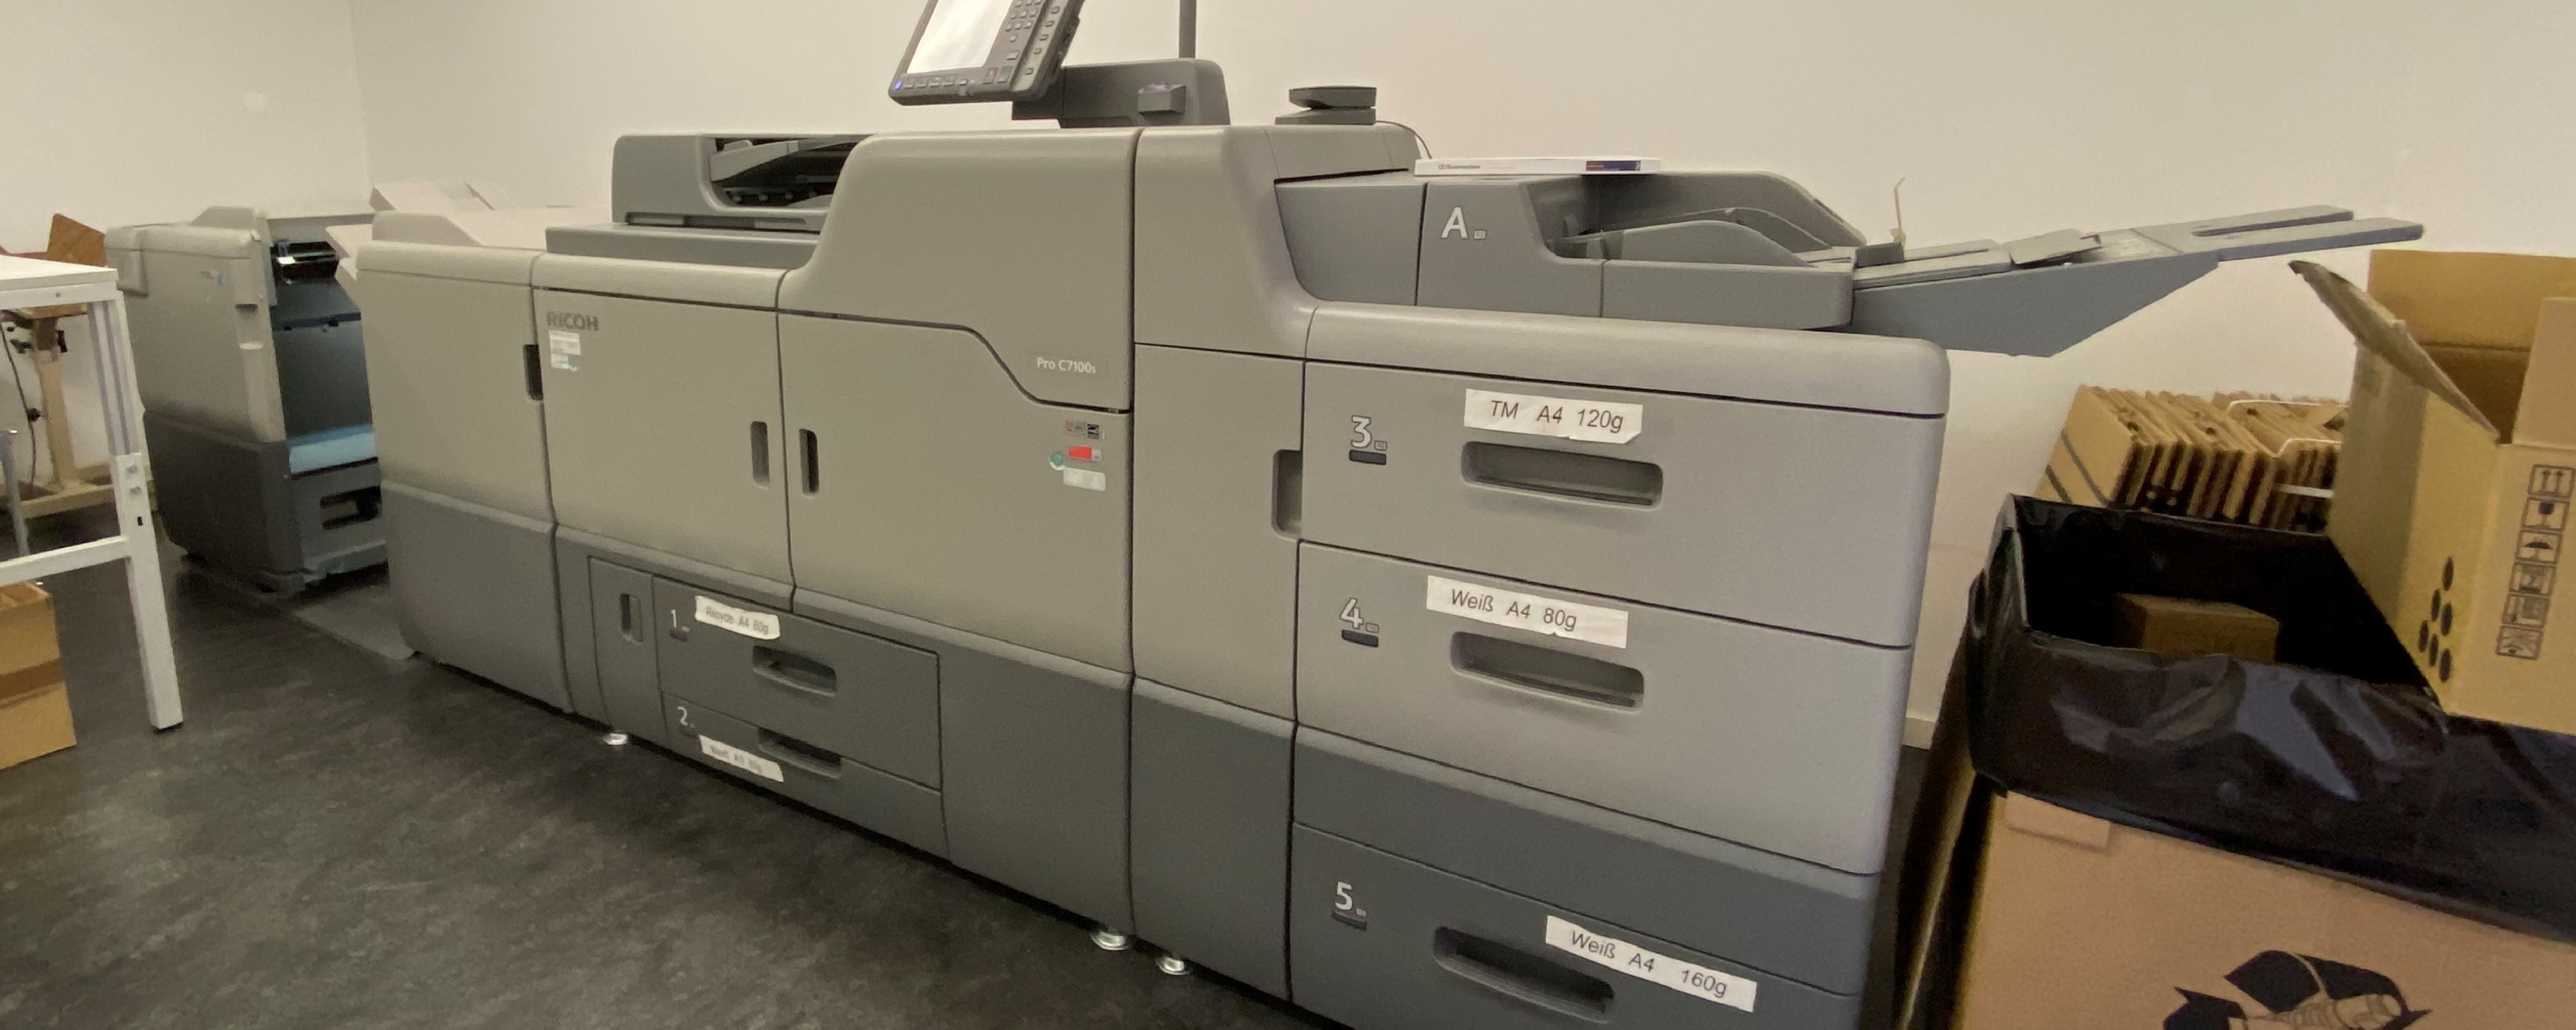 Bild: Das Bild zeigt eine Druckmaschine in der Druckerei.